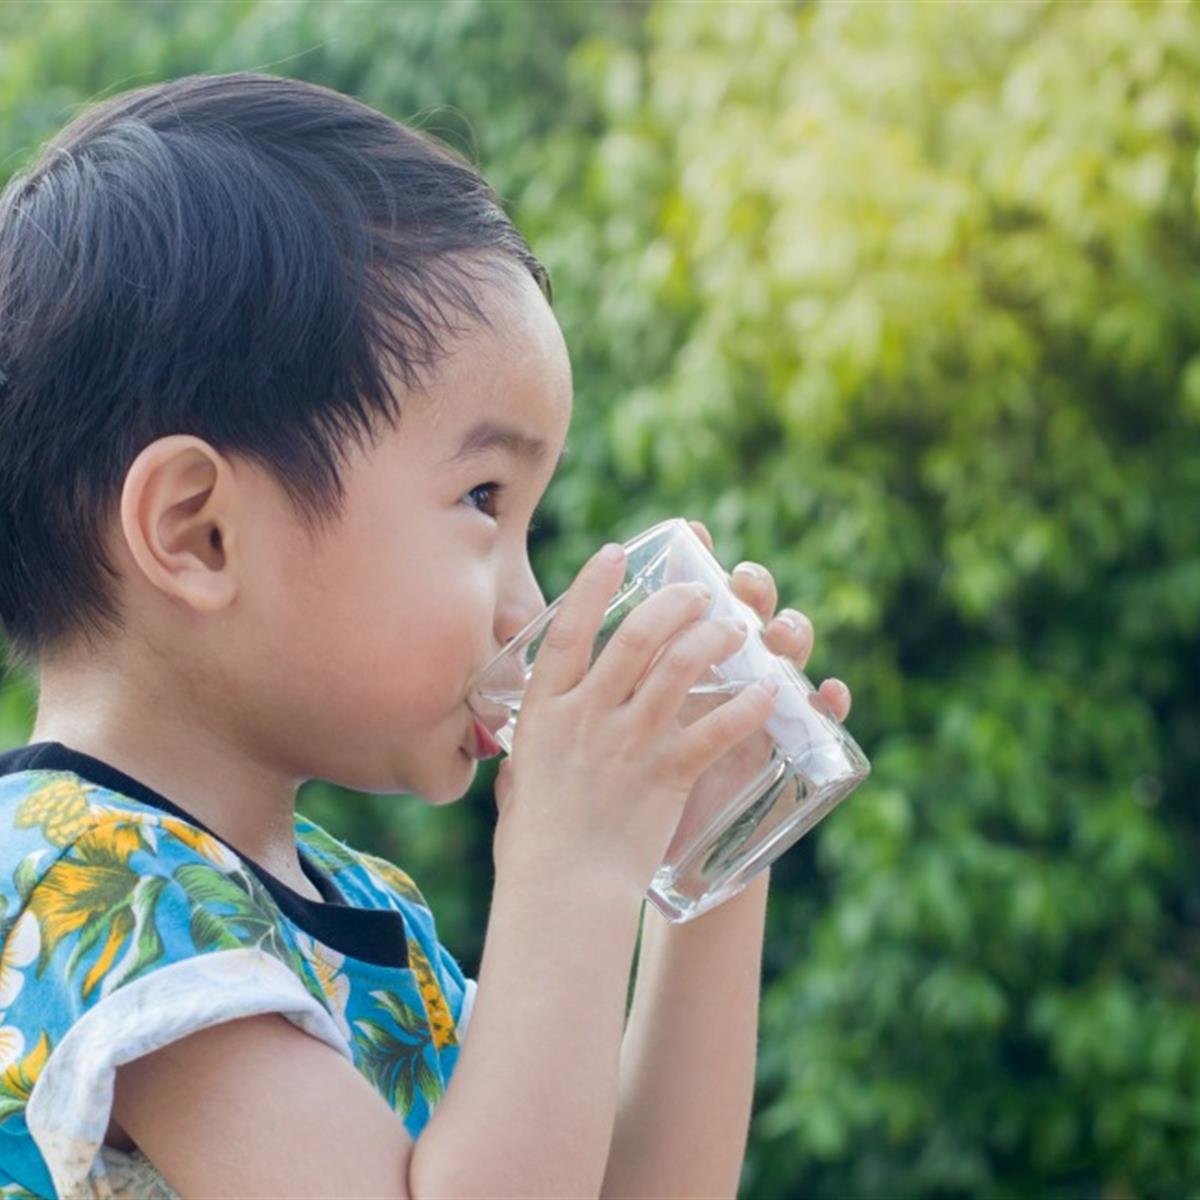 https://www.healthychildren.org/SiteCollectionImagesArticleImages/boy_water_cupe_drink.jpg?RenditionID=6